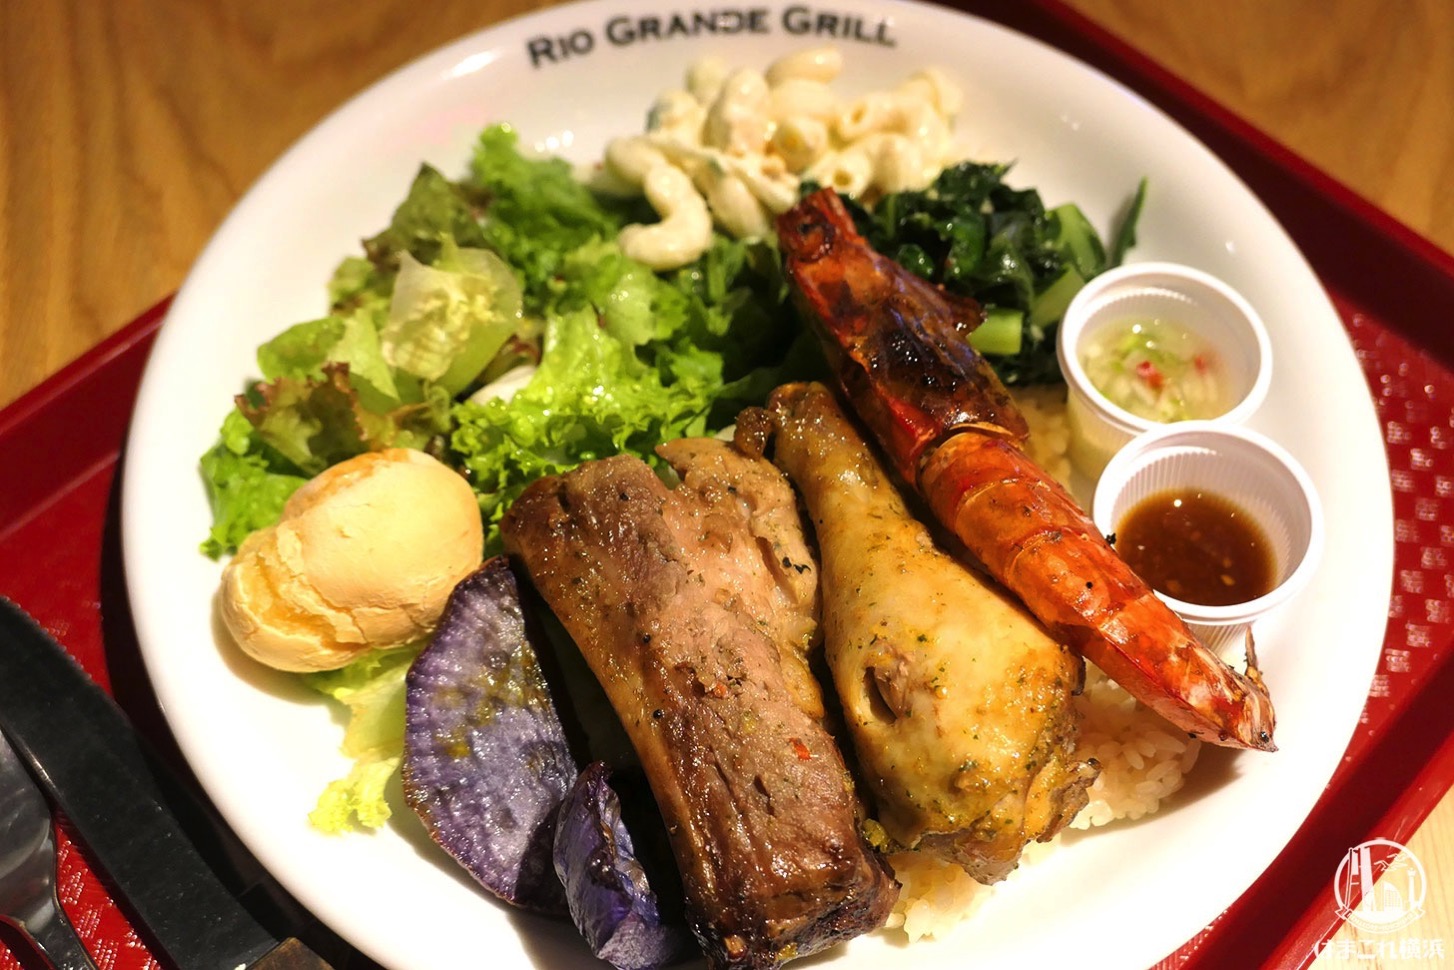 リオグランデグリル シァル横浜店のシュラスコプレートが肉・野菜充実！テイクアウトあり